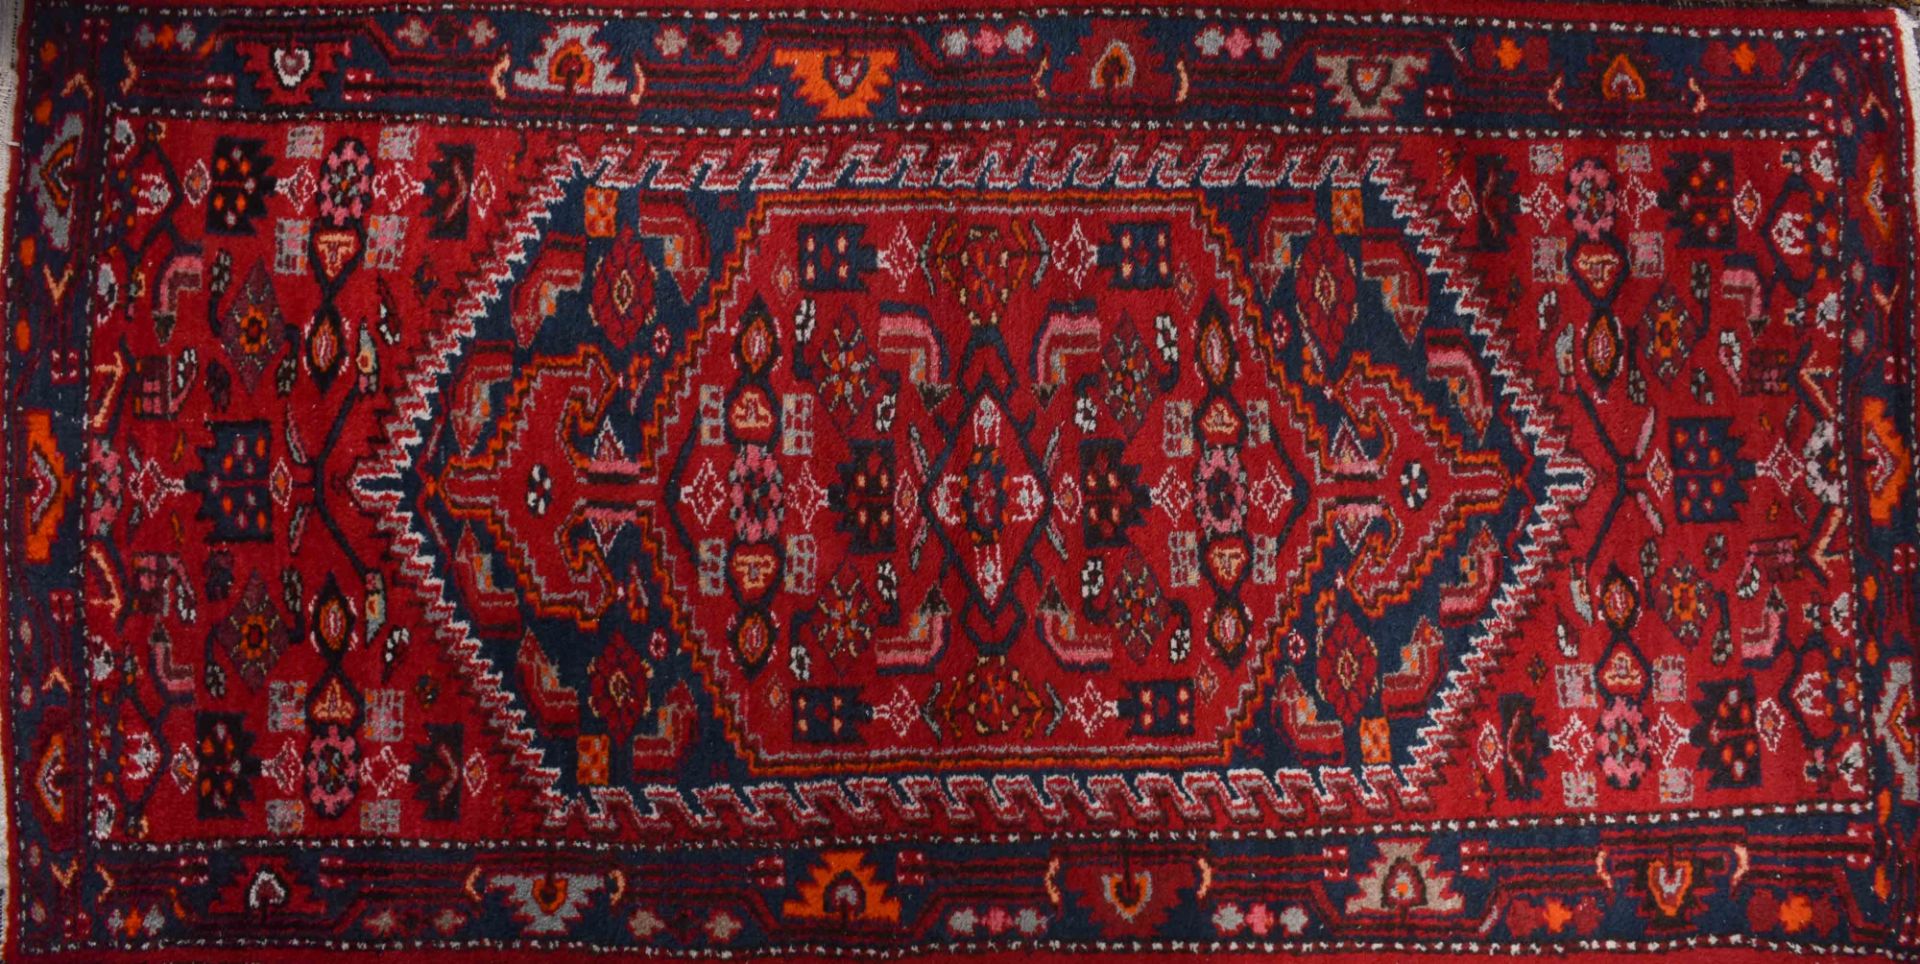 Alter Orientalischer Teppich212 cm x 108 cmOld oriental carpet212 cm x 108 cm